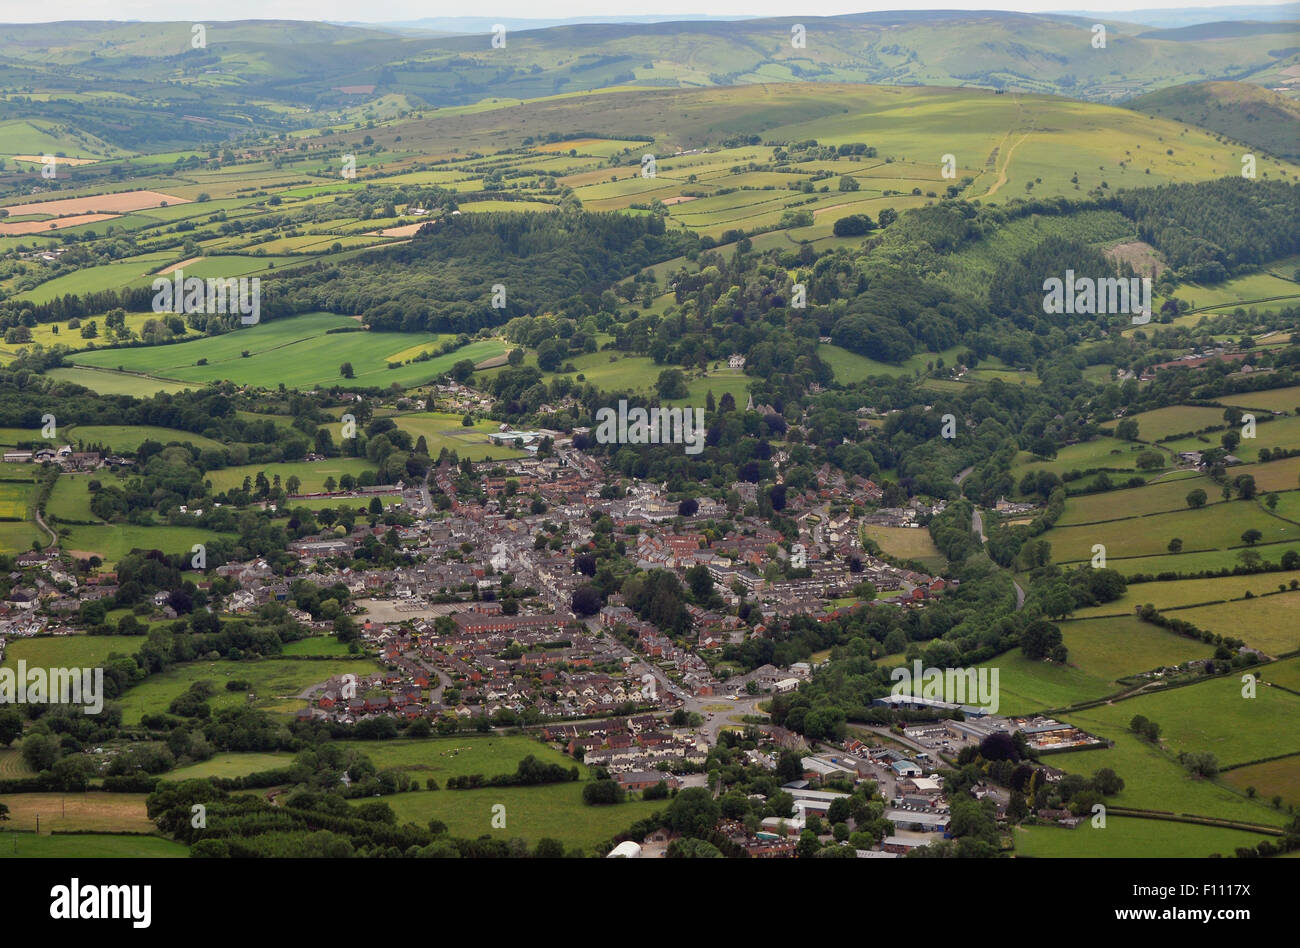 Une photographie aérienne de Kington, Herefordshire, Angleterre, Royaume-Uni. Banque D'Images